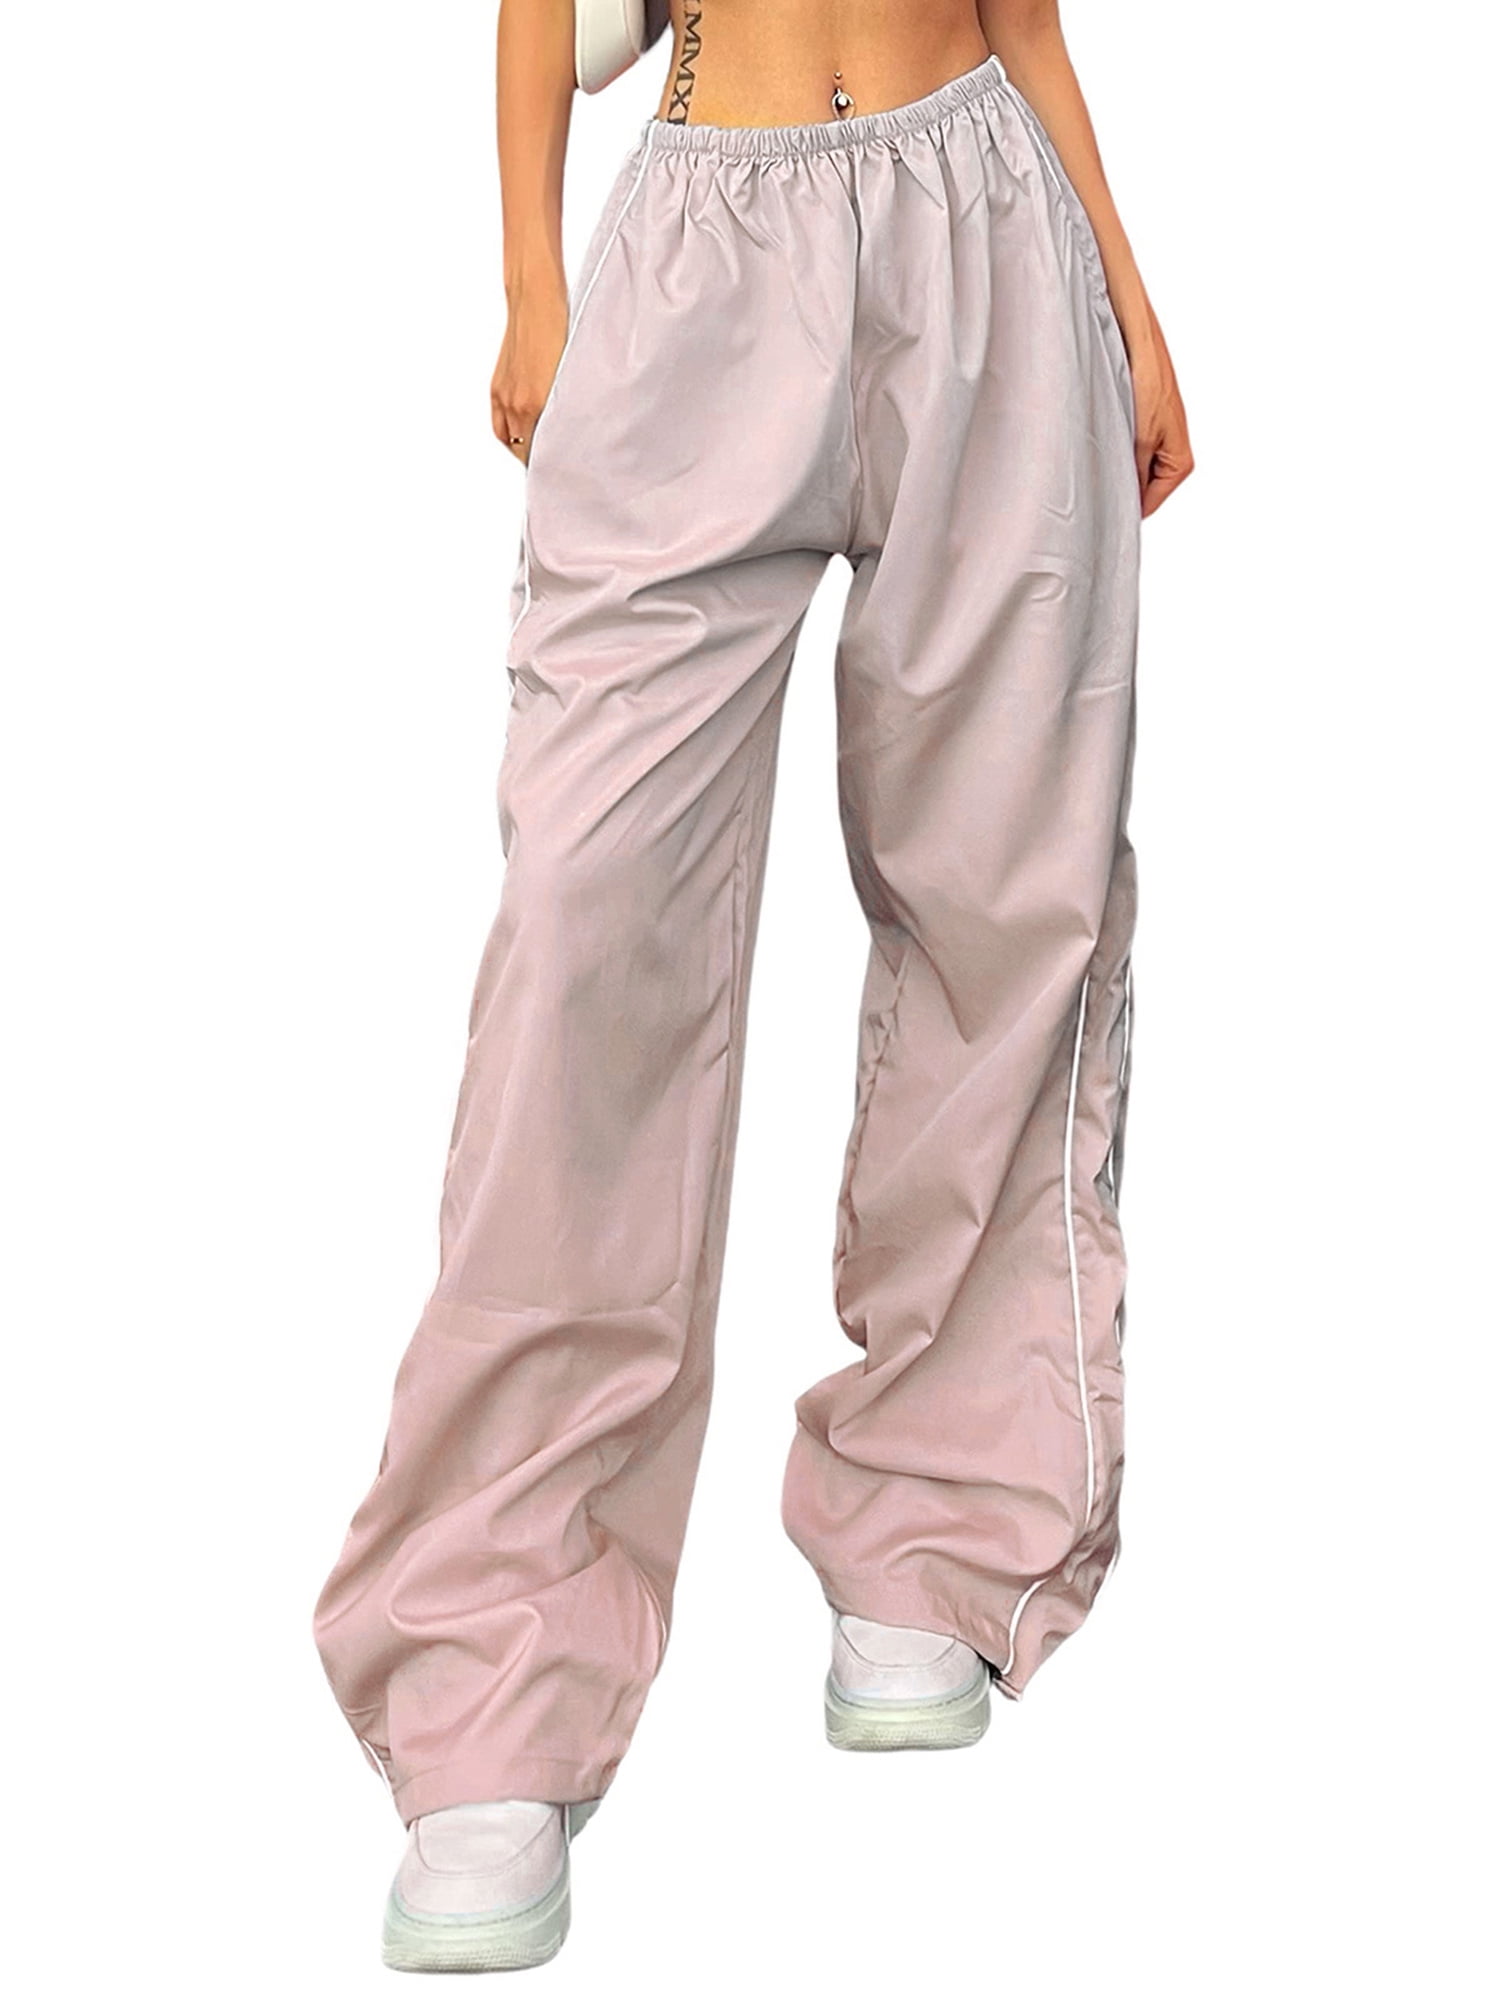  JZC Parachute Pants for Women Cargo Pants Womens Baggy